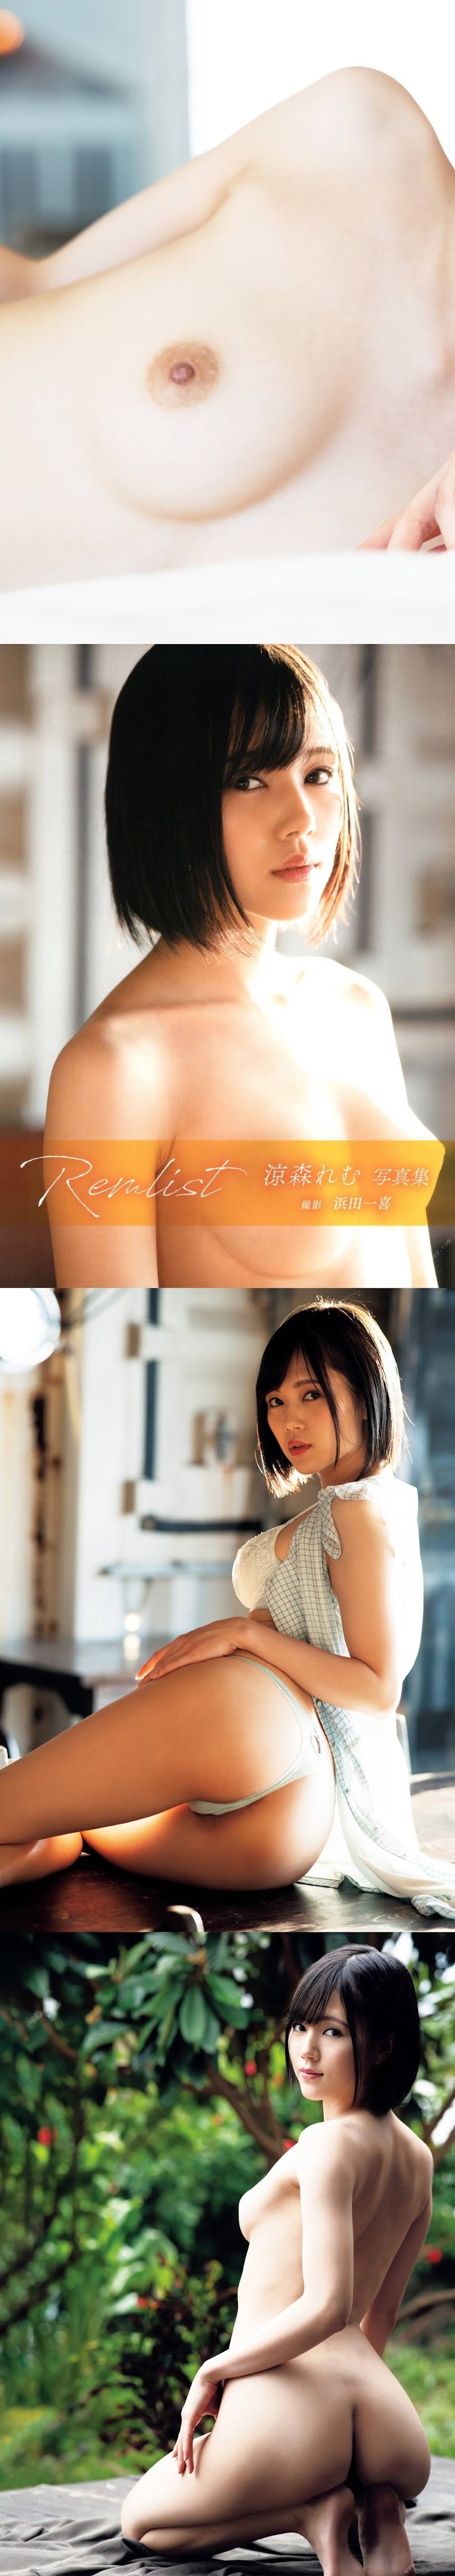 P215302.rar-jk- [Photobook] Remu Suzumori 涼森れむ - Remlist (2020-01-21)   P215302